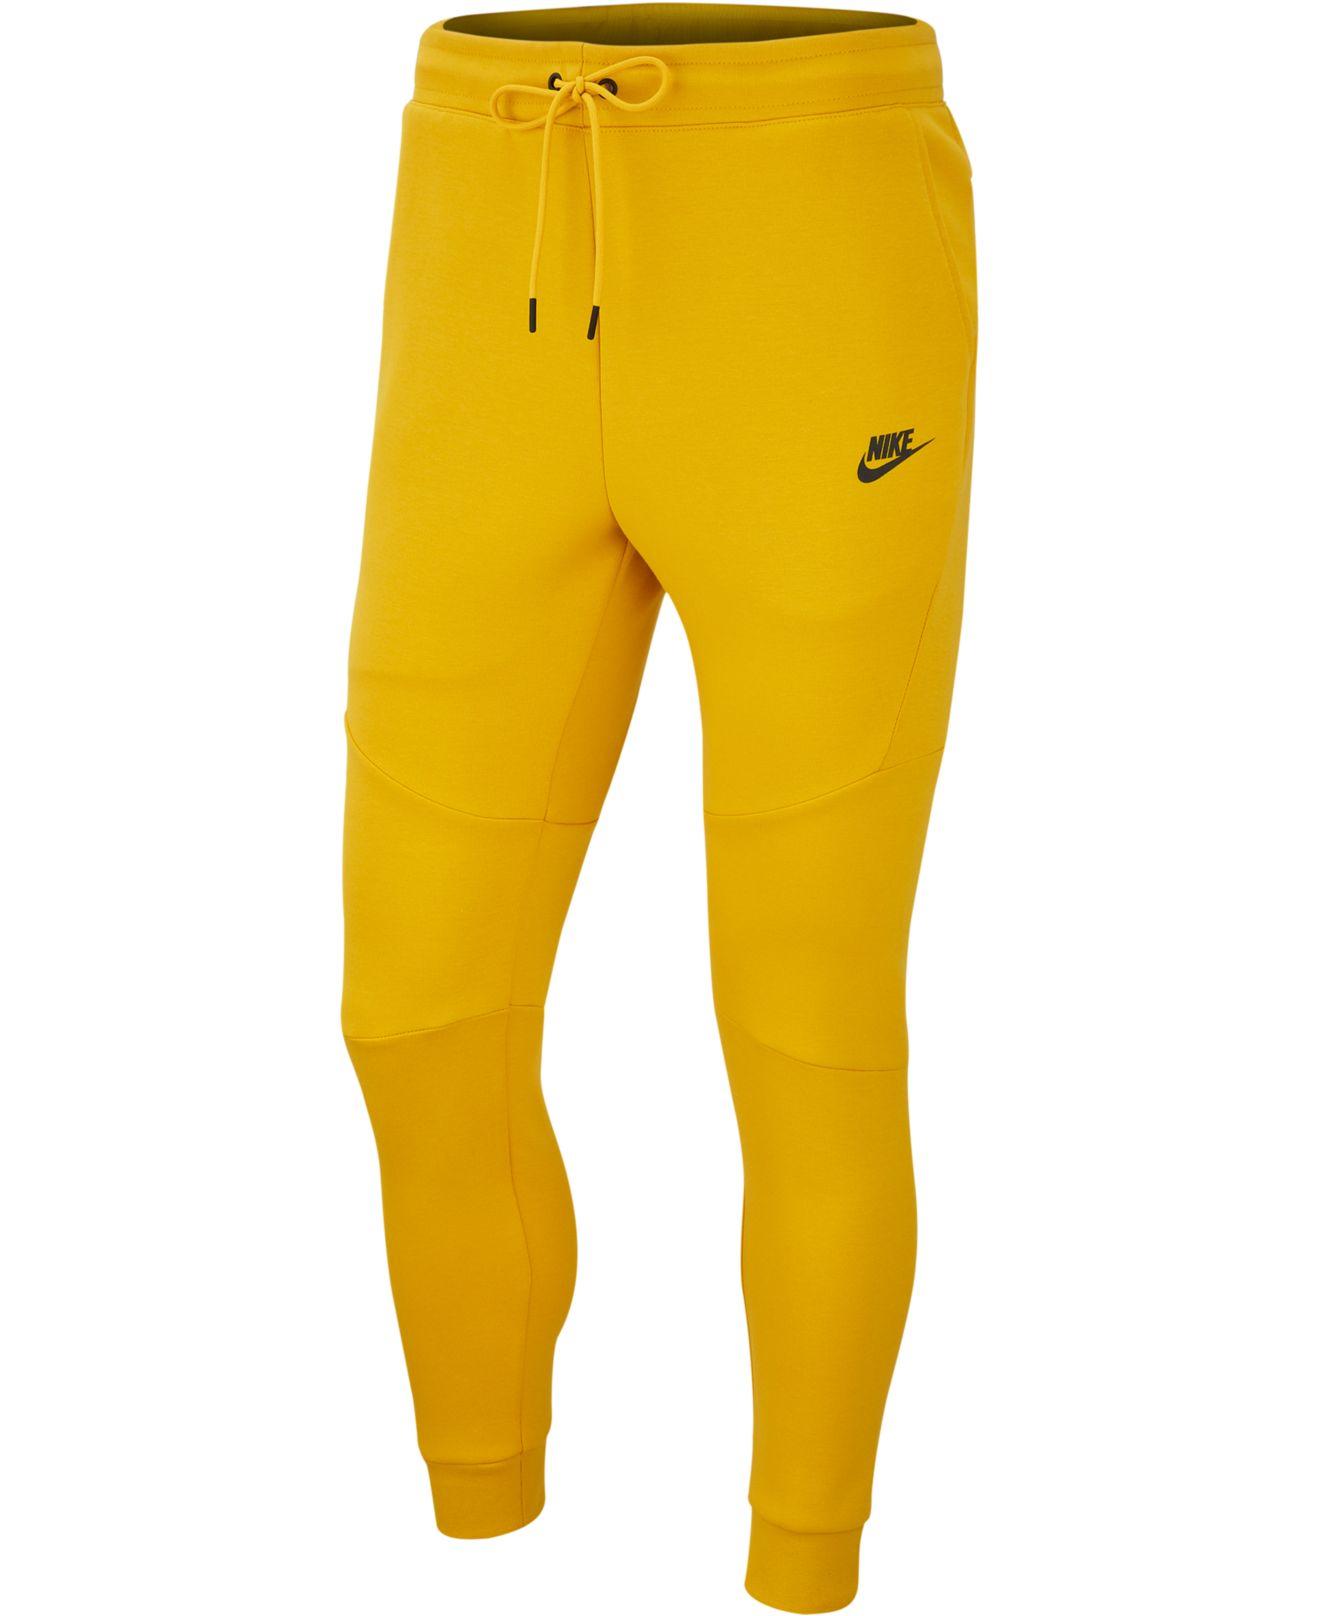 Nike Tech Fleece Joggers in Yellow for Men - Lyst